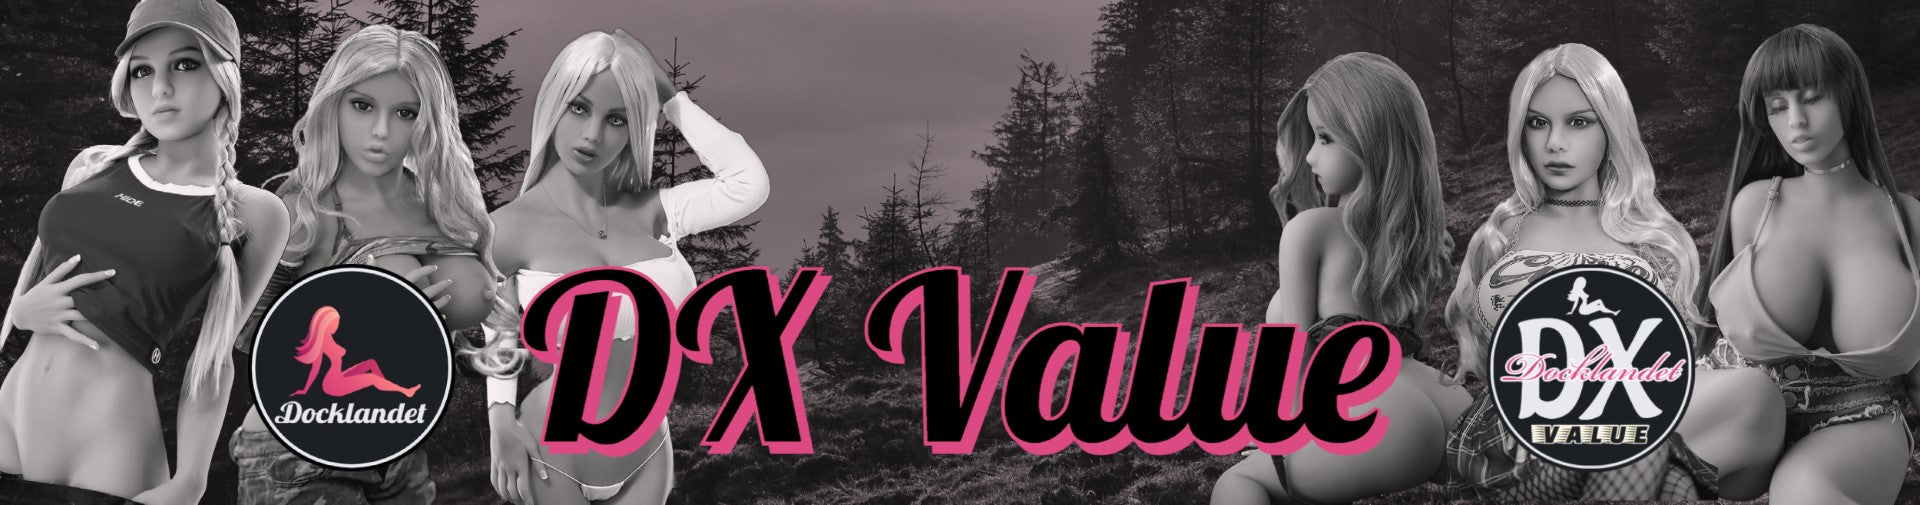 DX Value erbjuder billiga sexdockor av hög kvalitet till förmånliga priser. DX Values billiga sexdockor är gjorda av materialet TPE. En billig sexdocka från DX Value är alltid kontrollerad innan leverans. Alltid fri frakt på billiga sexdockor!